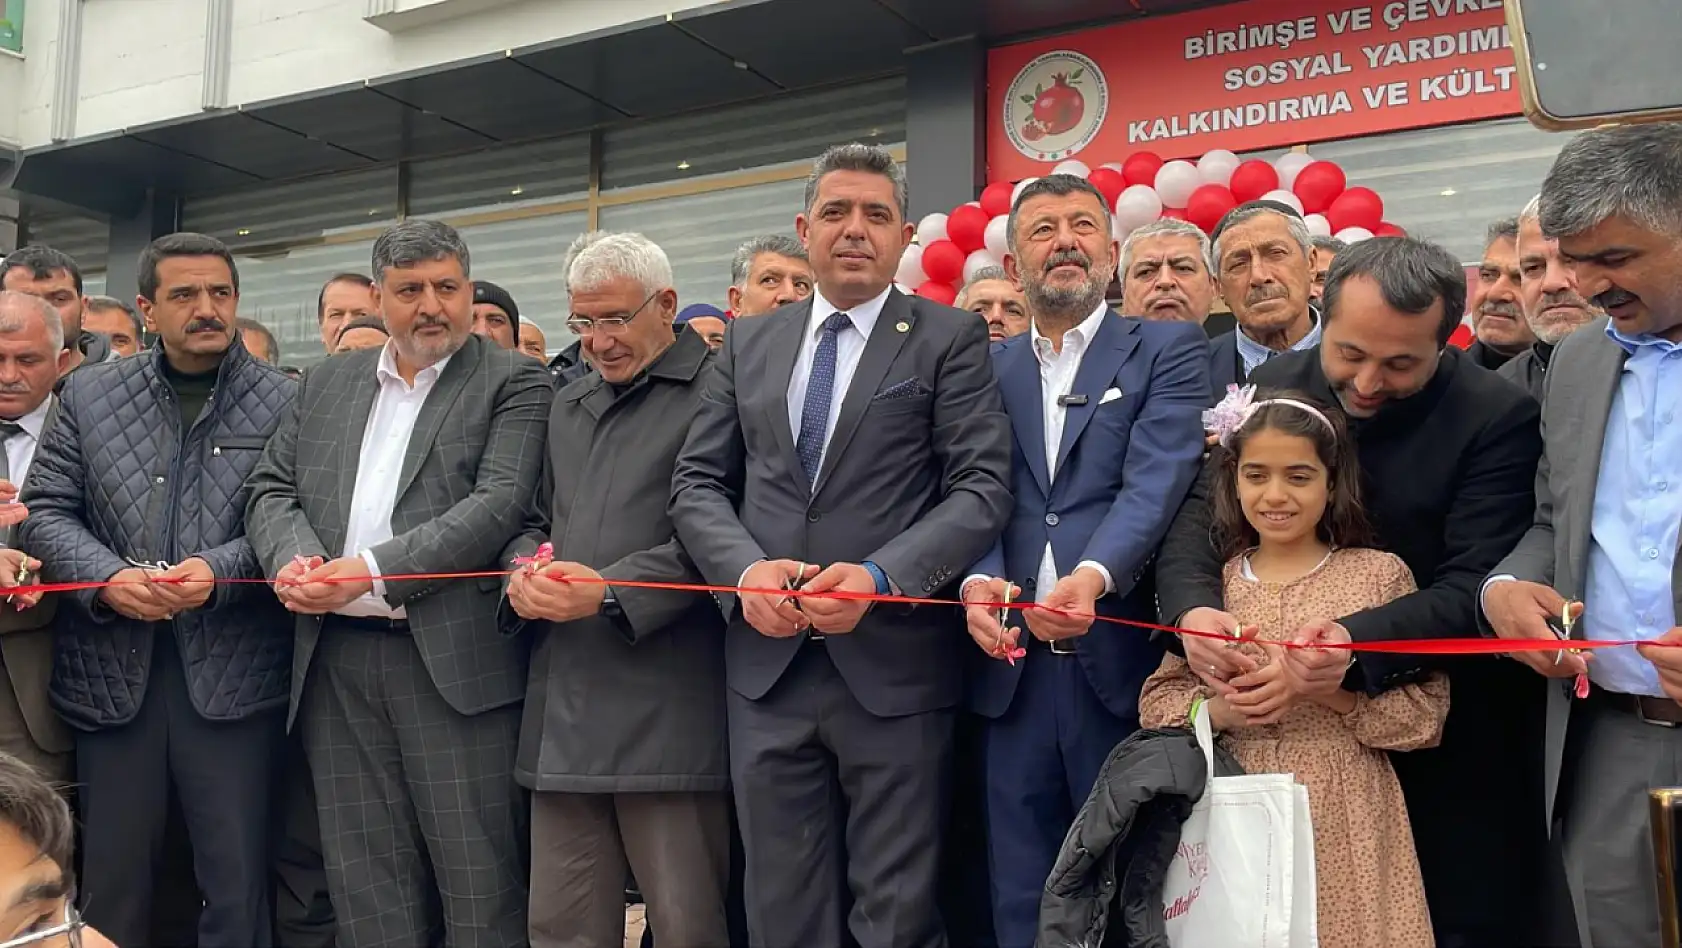 Birimşeliler Derneği Malatya Şubesi açıldı